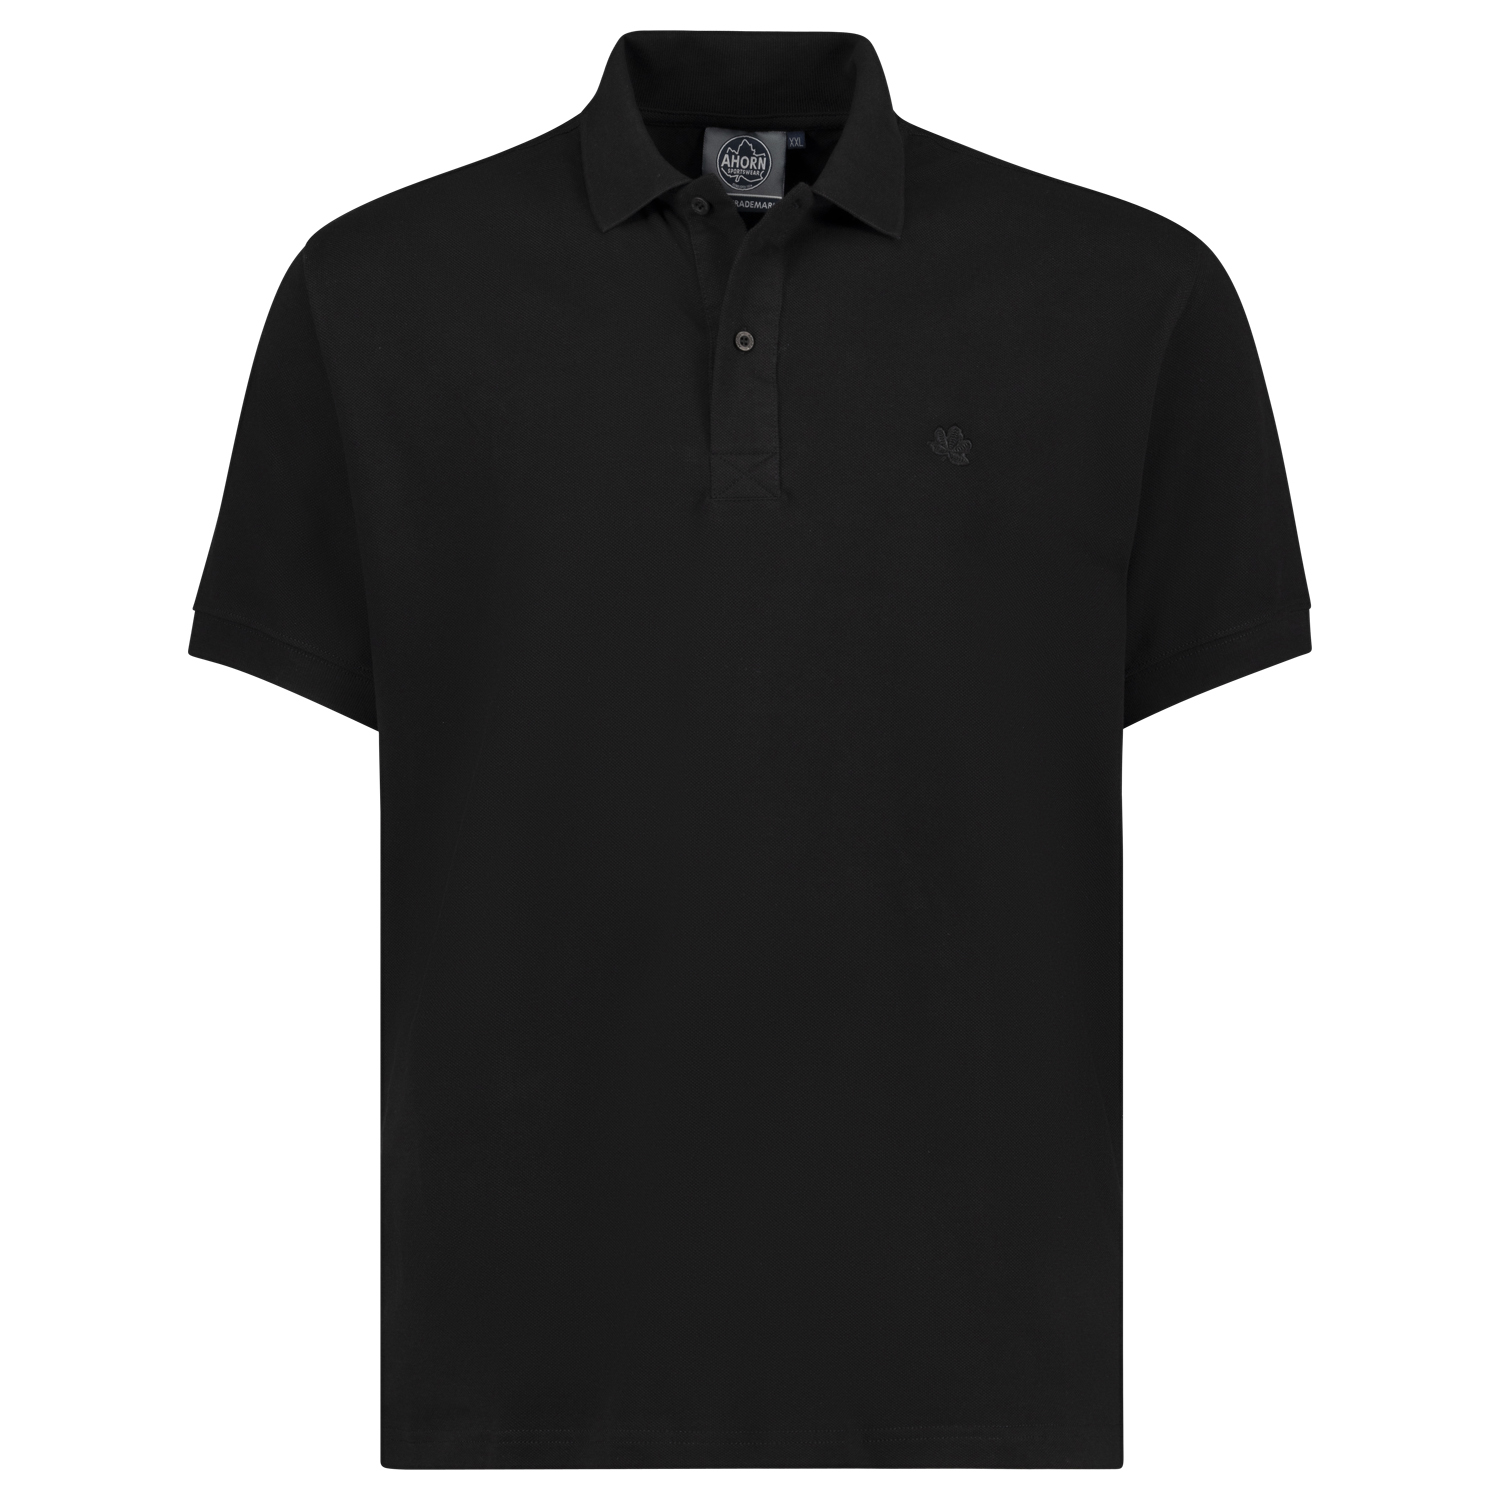 Ahorn Sportswear kurzärmliges Herren Pique Polo Shirt in schwarz bis Übergröße 10XL